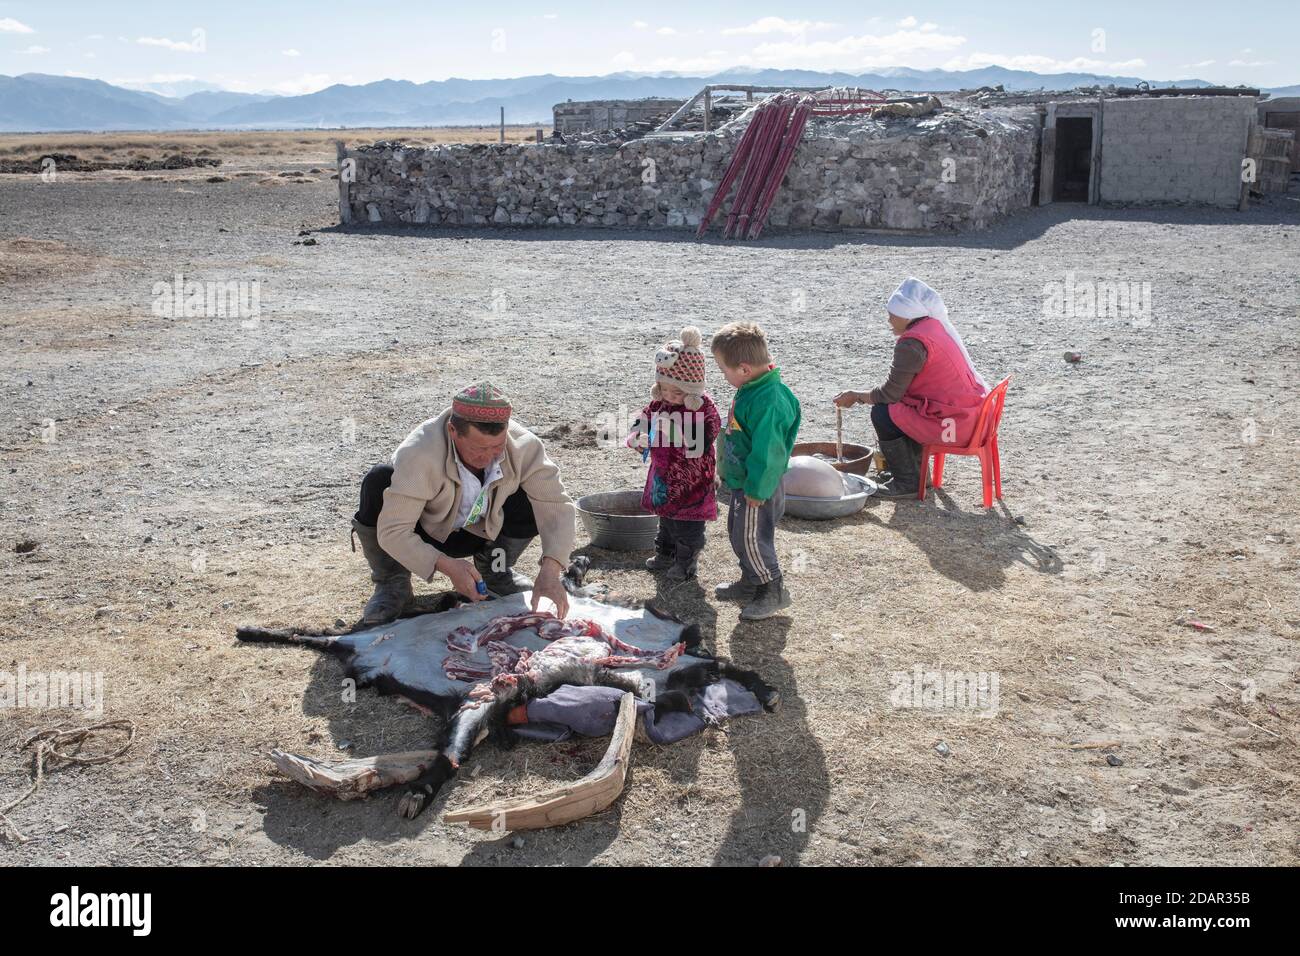 SPAI Bashakhan, chef d'une famille nomade dans les montagnes de l'Altaï, brochant une chèvre, sa femme nettoie les intestins de la province d'Olgii, Mongolie Banque D'Images